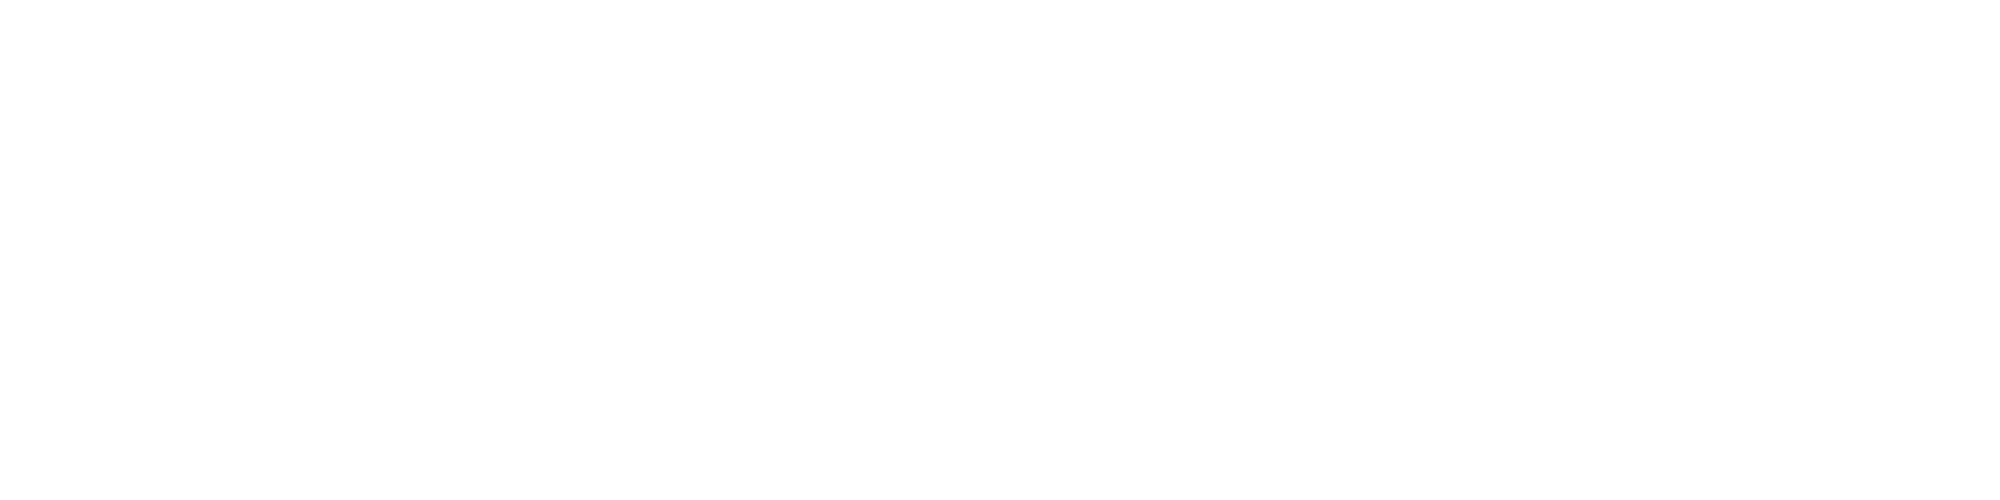 Scribble, Scribble, Scribble...